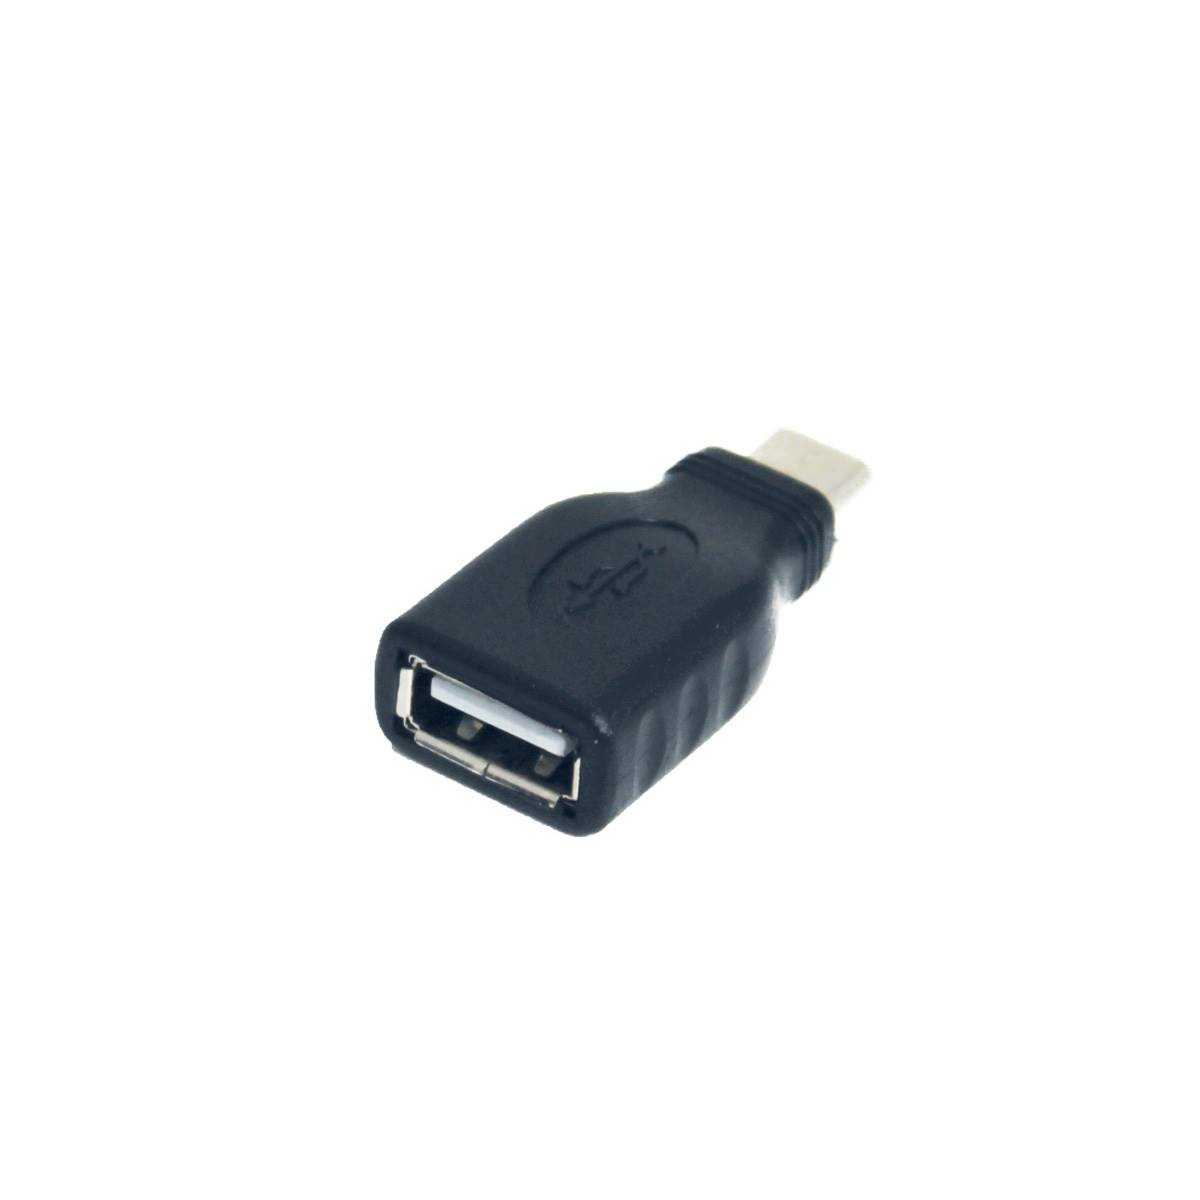 Convertisseur USB A male vers USB-C femelle TYPE C connecteur